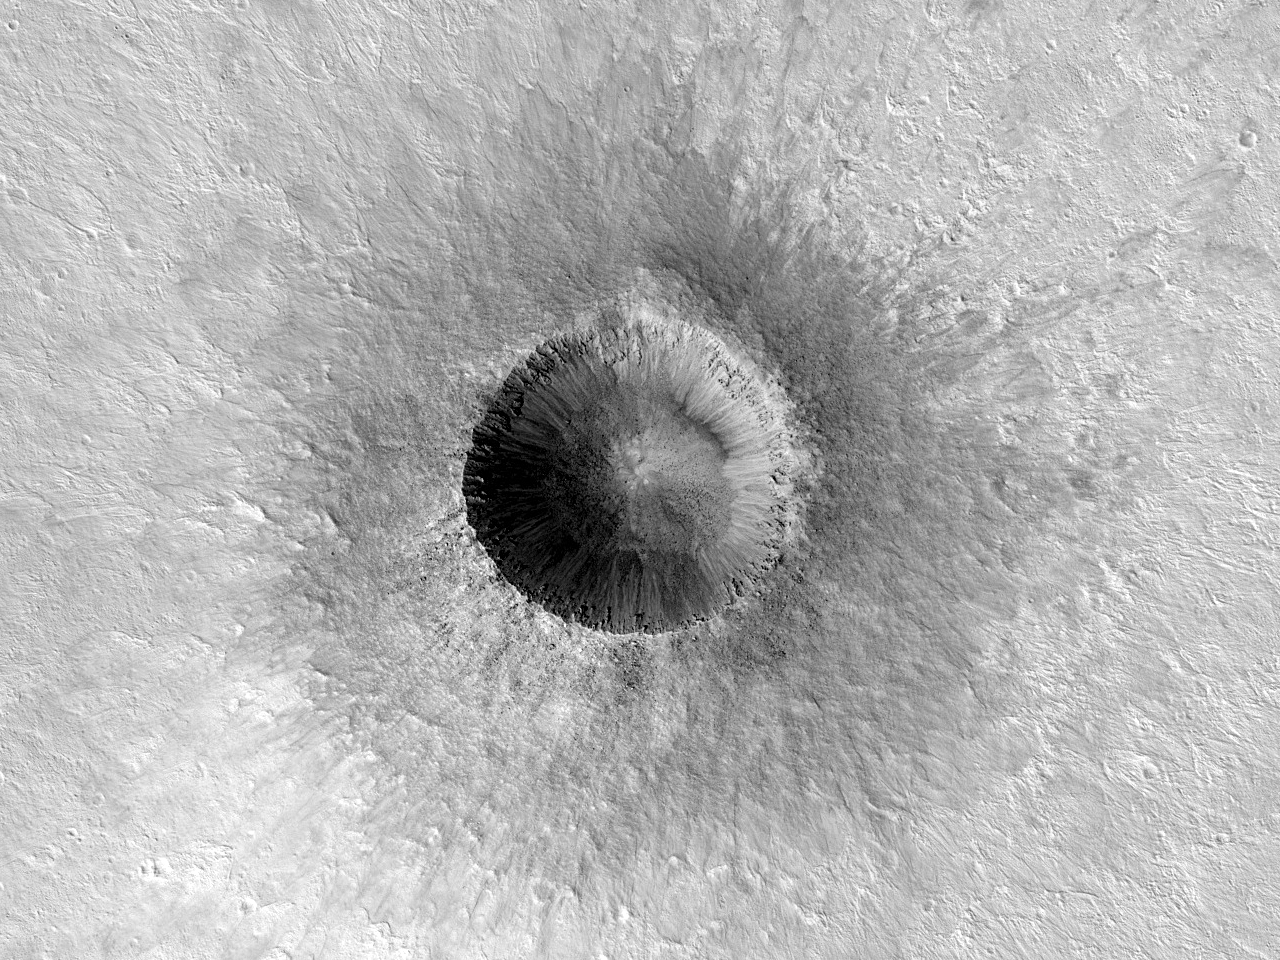 Bardzo dobrze zachowany krater w Ares Vallis